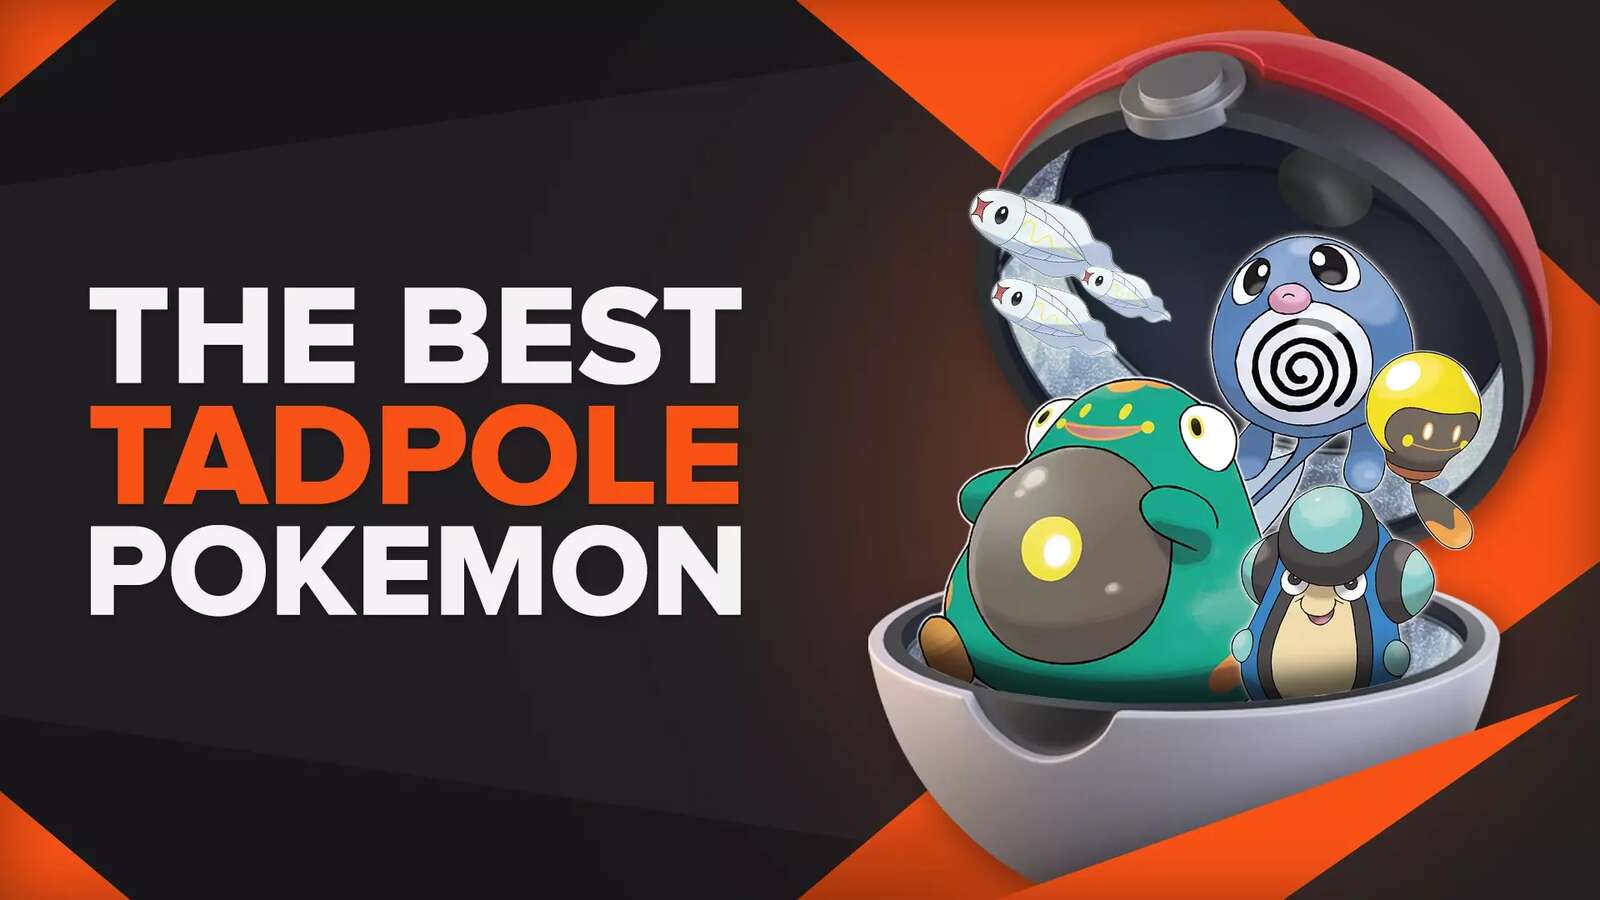 The Best Tadpole Pokemon [EVERY Tadpole Pokemon ranked!]